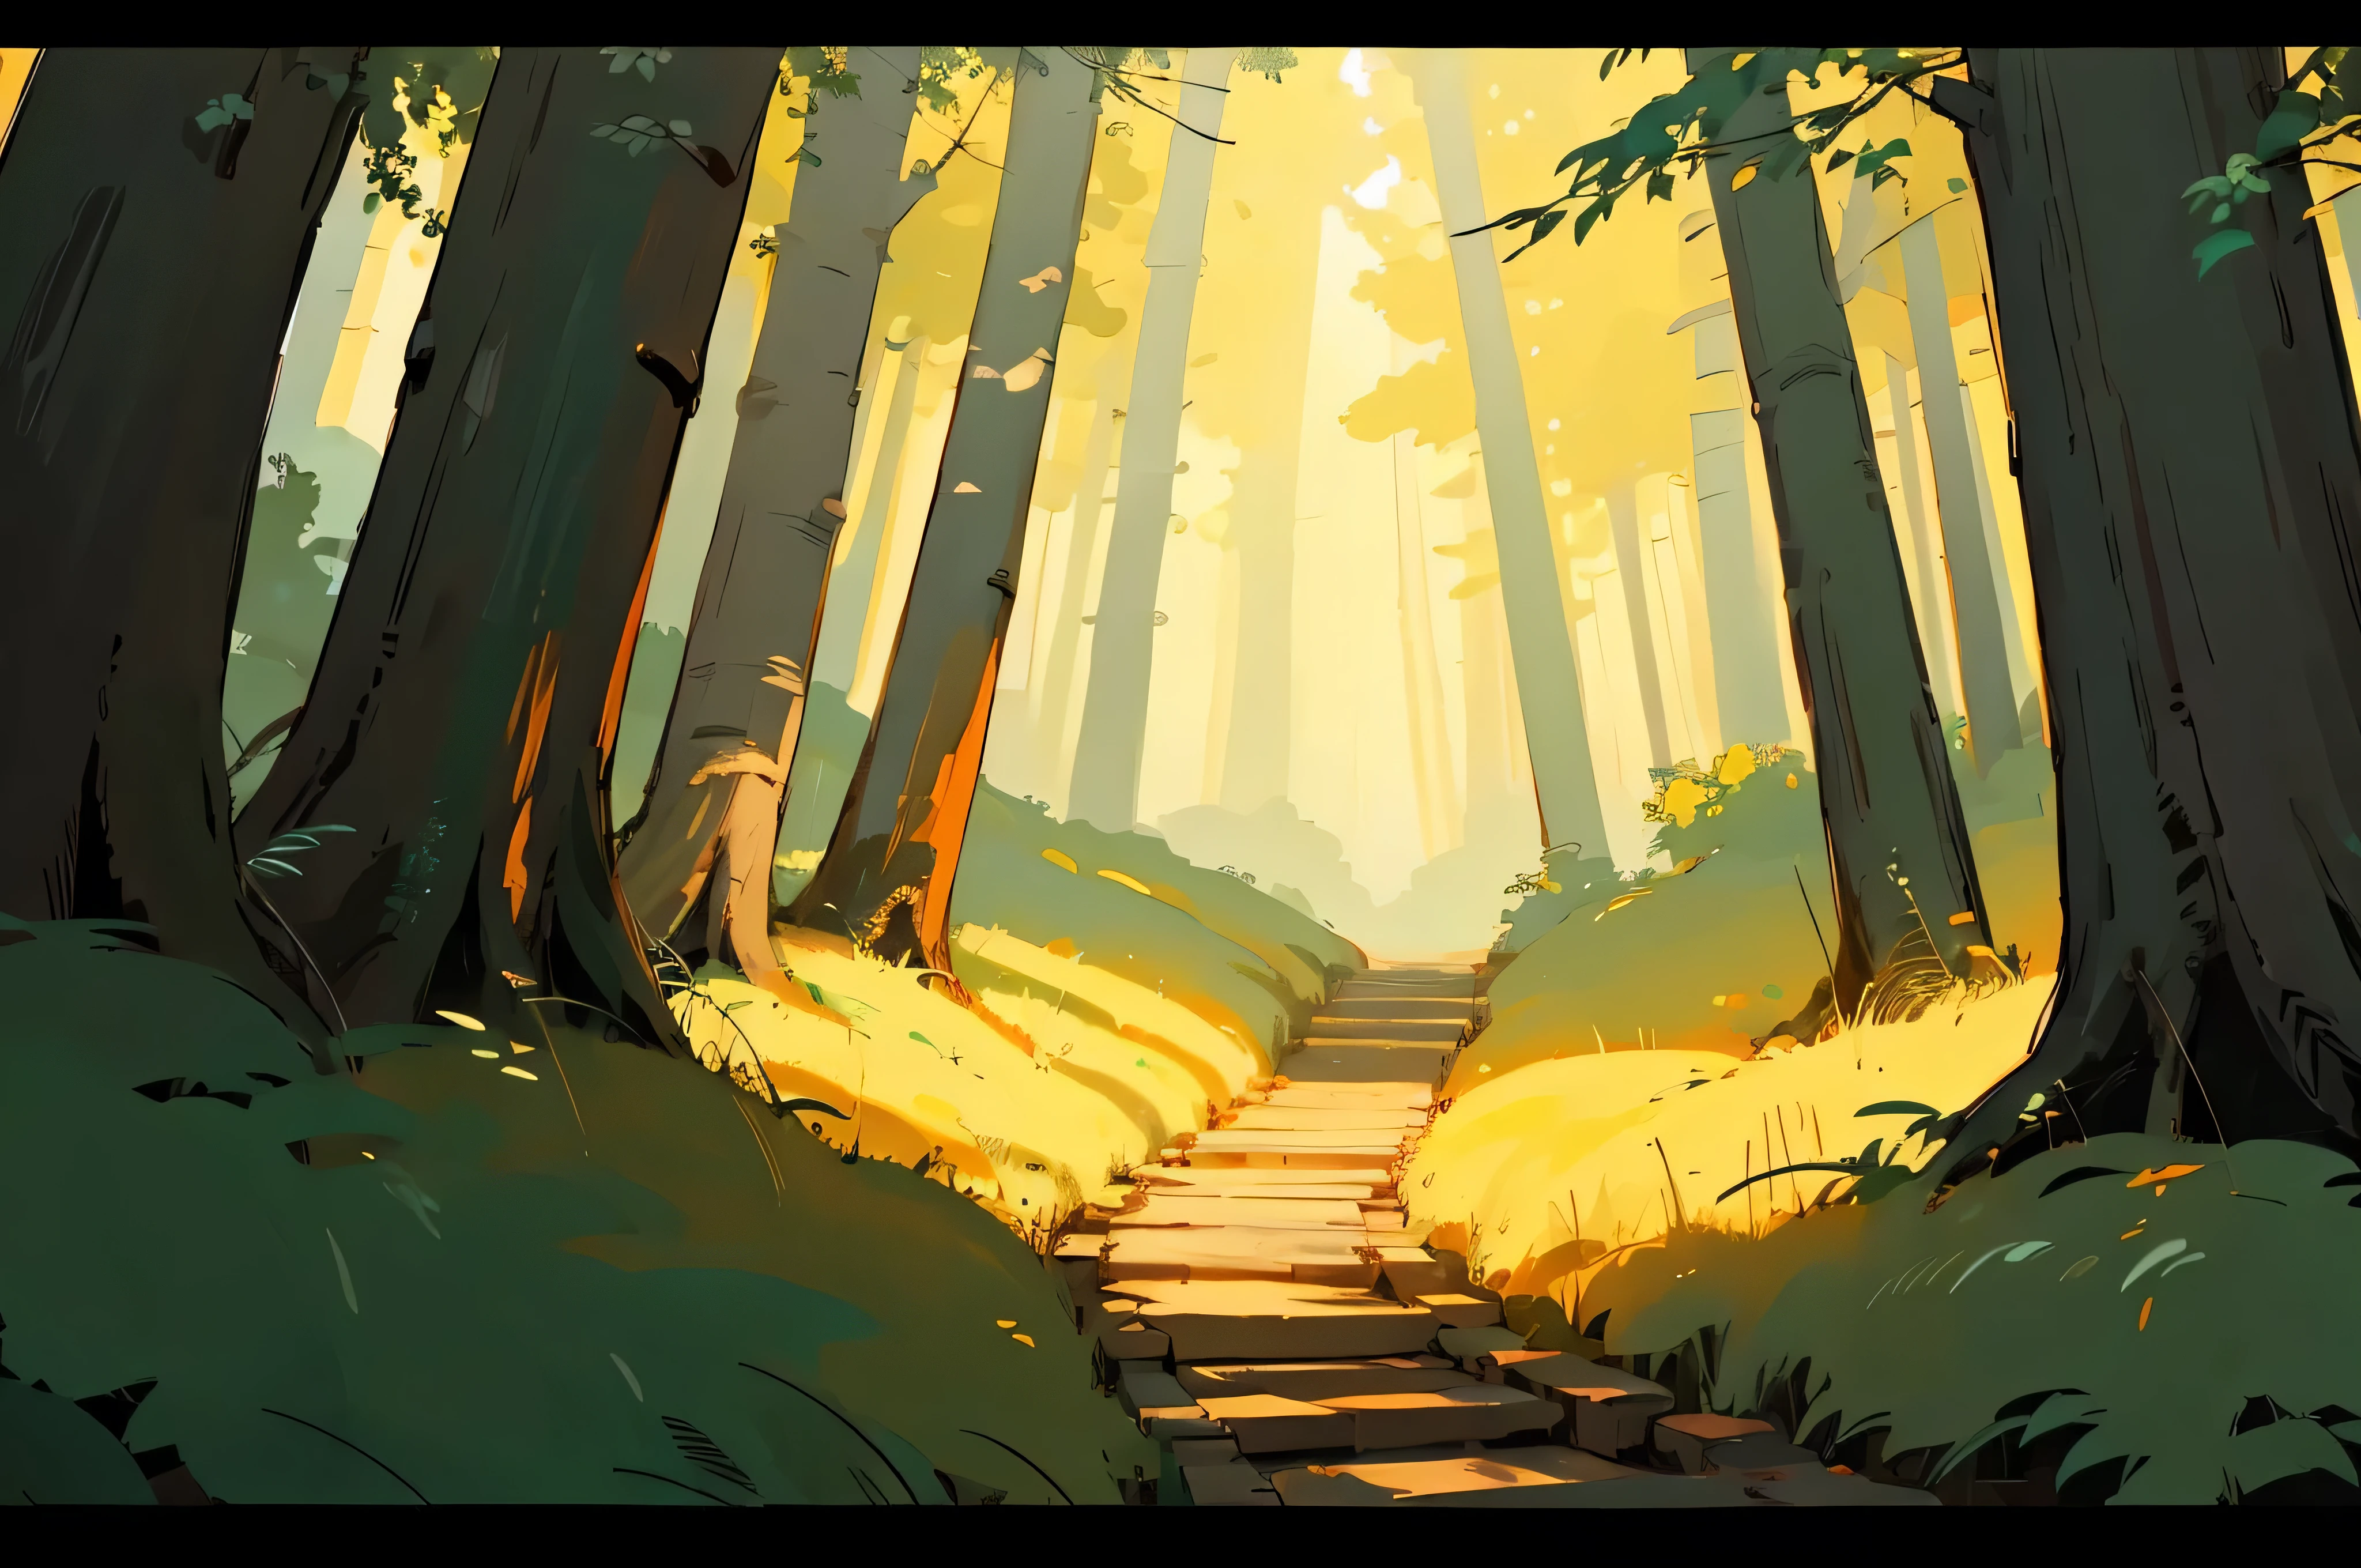 Ghibli-Hintergrundstil, Wald, Helle Farben, immersive Atmosphäre, Anime-Stil, Sanftes Licht, keine Charaktere, Nur Hintergrund